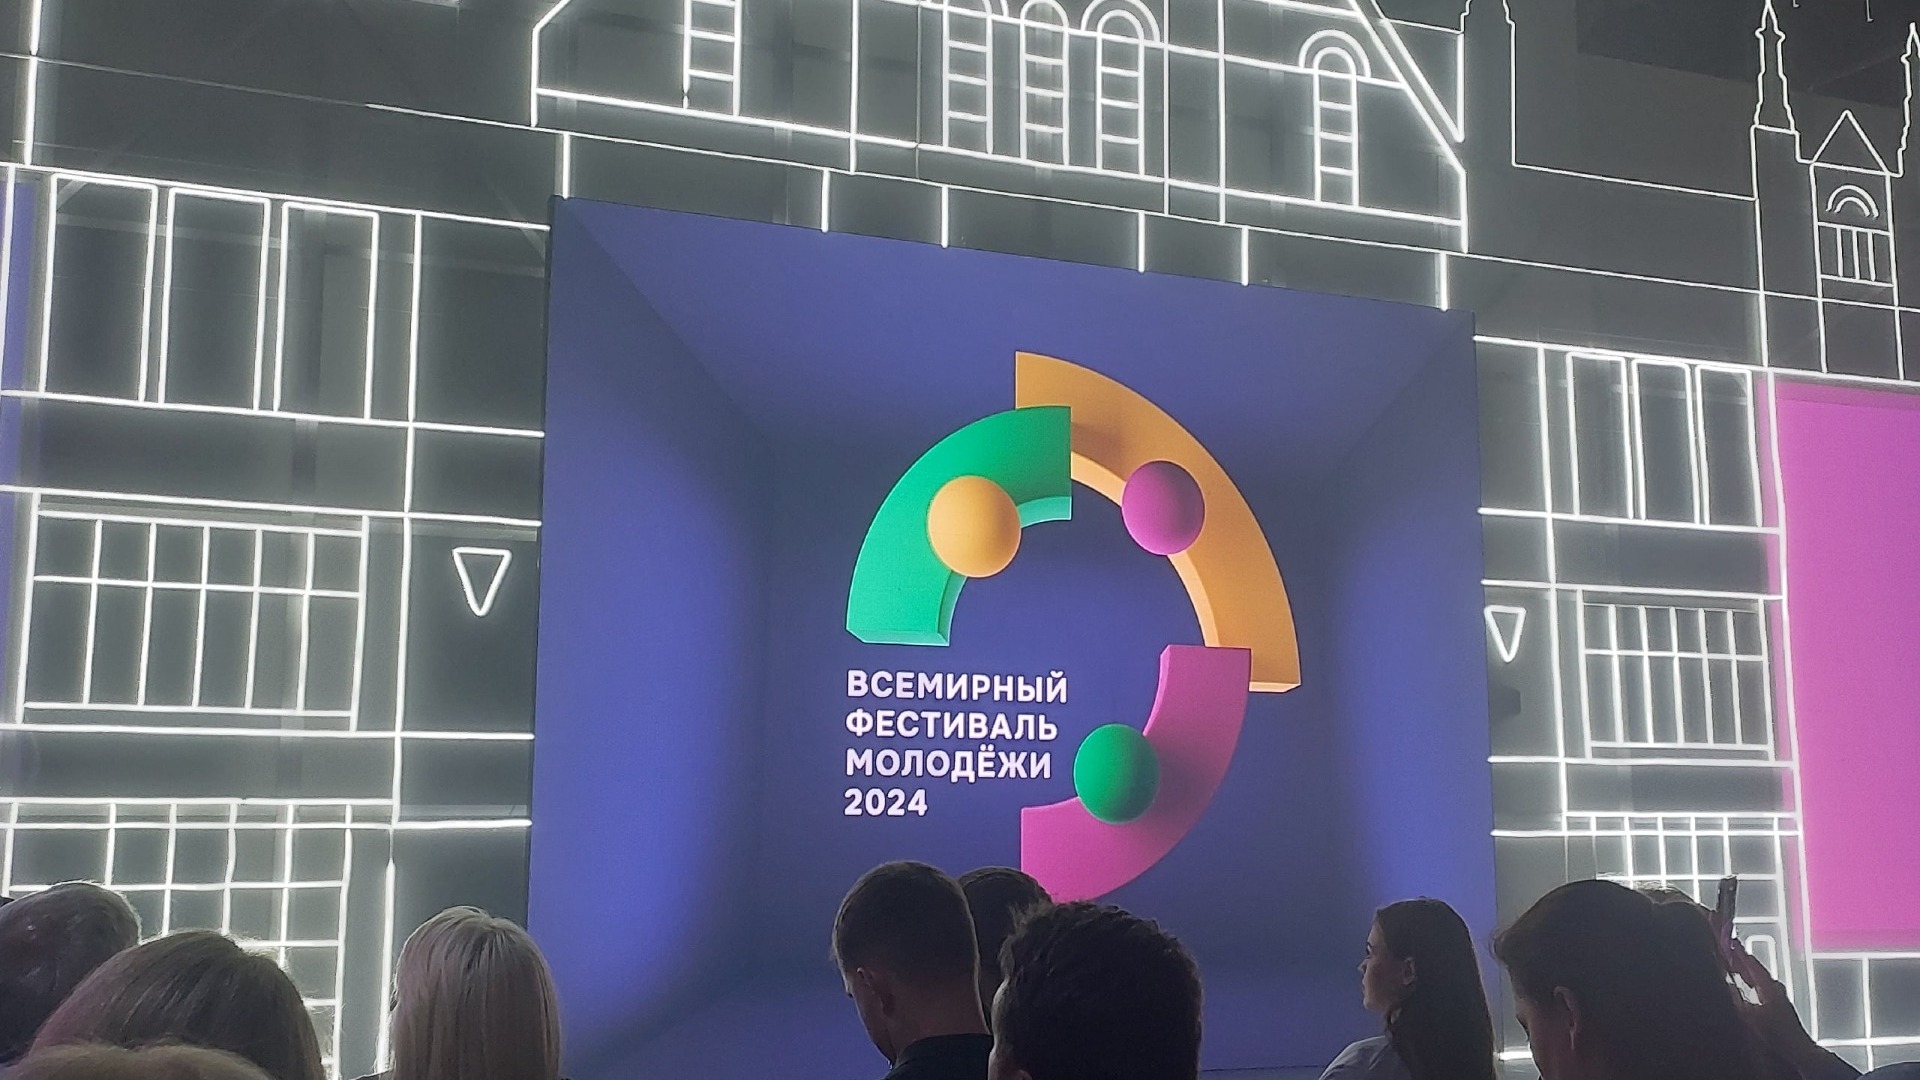 Концепция Всемирного фестиваля молодежи представлена в Нижнем Новгороде